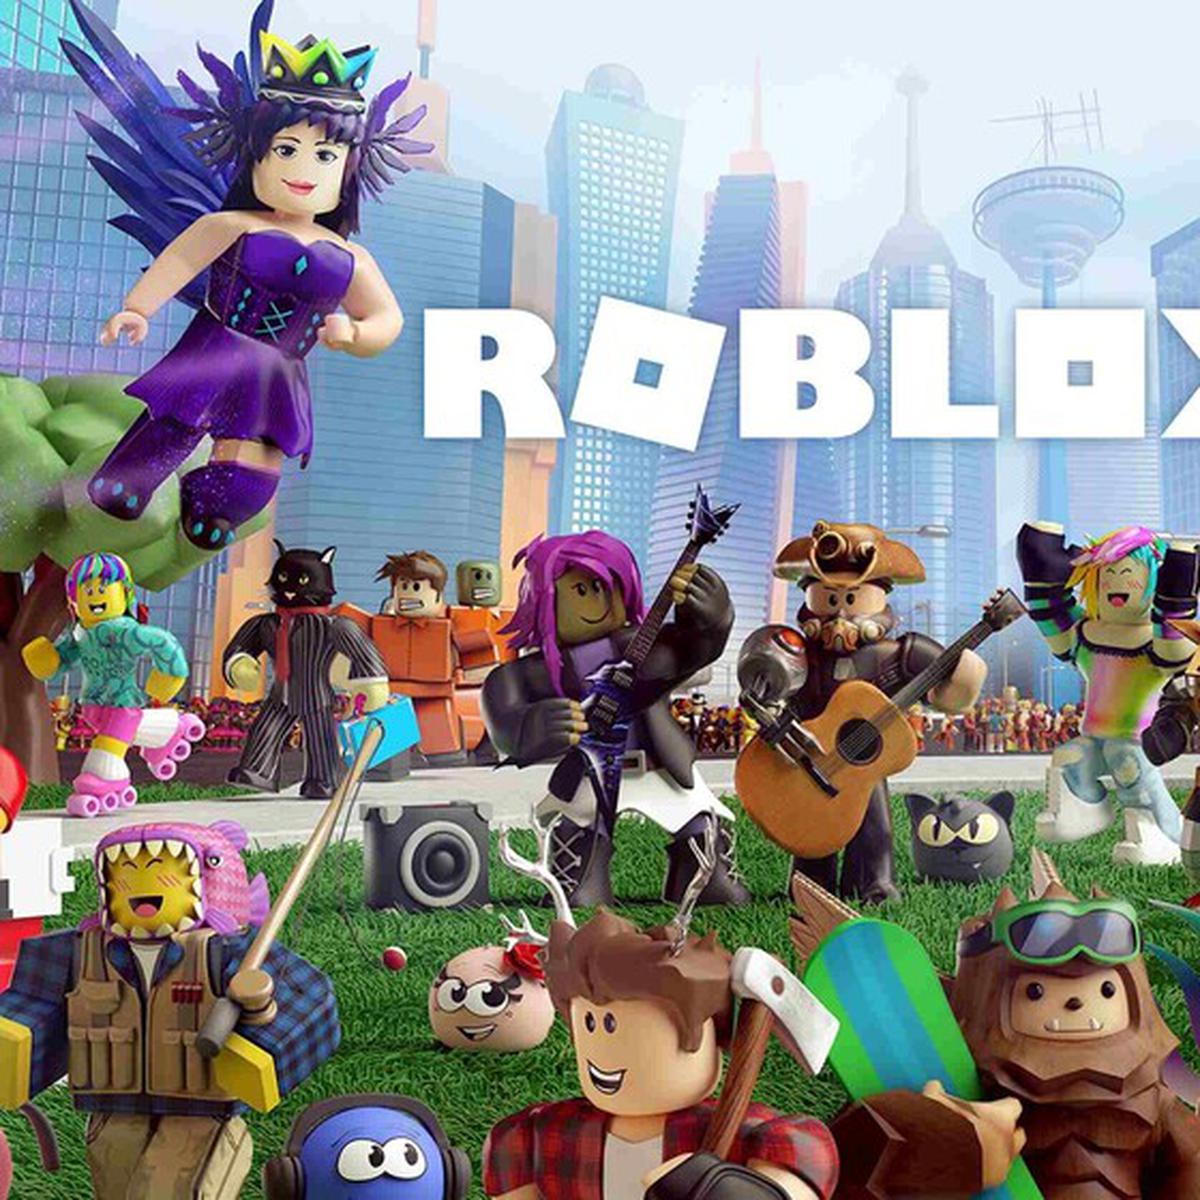 Cuándo llegará ROBLOX a PlayStation 4 y PS5, Videojuegos online, tdpe, RESPUESTAS